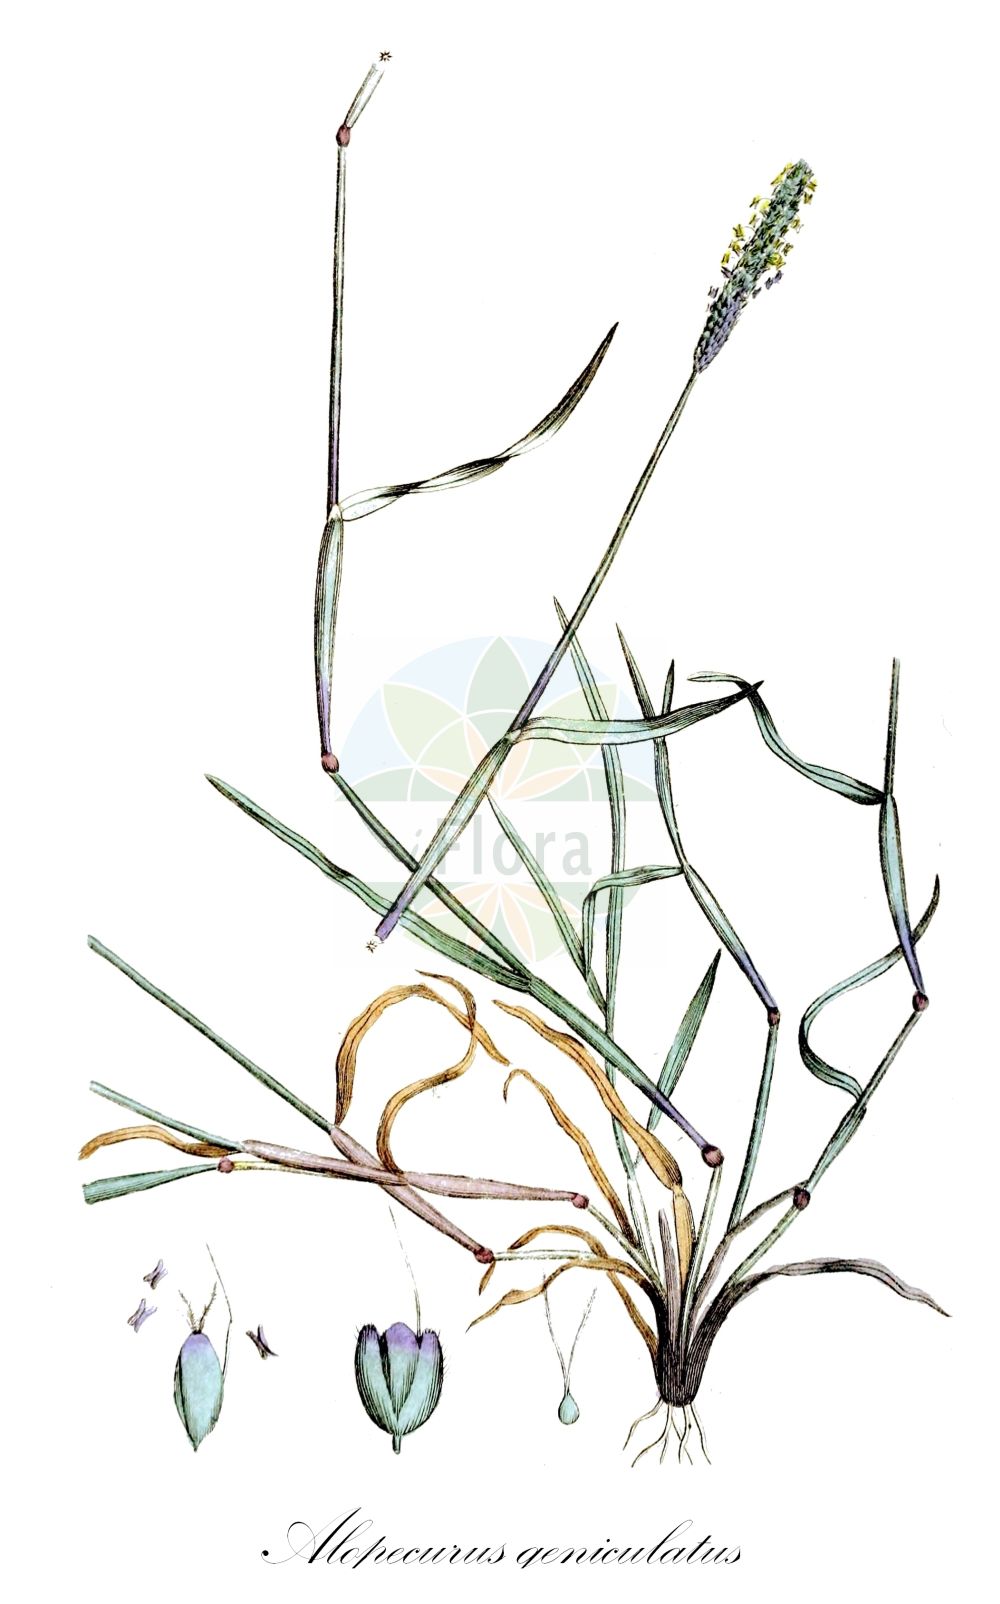 Historische Abbildung von Alopecurus geniculatus (Knick-Fuchsschwanzgras - Marsh Foxtail). Das Bild zeigt Blatt, Bluete, Frucht und Same. ---- Historical Drawing of Alopecurus geniculatus (Knick-Fuchsschwanzgras - Marsh Foxtail). The image is showing leaf, flower, fruit and seed.(Alopecurus geniculatus,Knick-Fuchsschwanzgras,Marsh Foxtail,Alopecurus geniculatus,Knick-Fuchsschwanzgras,Geknietes Fuchsschwanzgras,Knick-Fuchsschwanz,Marsh Foxtail,Floating Foxtail,Kneed Foxtail,Water Foxtail,Alopecurus,Fuchsschwanzgras,Foxtail,Poaceae,Süßgräser,Grass family,Blatt,Bluete,Frucht,Same,leaf,flower,fruit,seed,Svensk Botanik (Svensk Botanik))